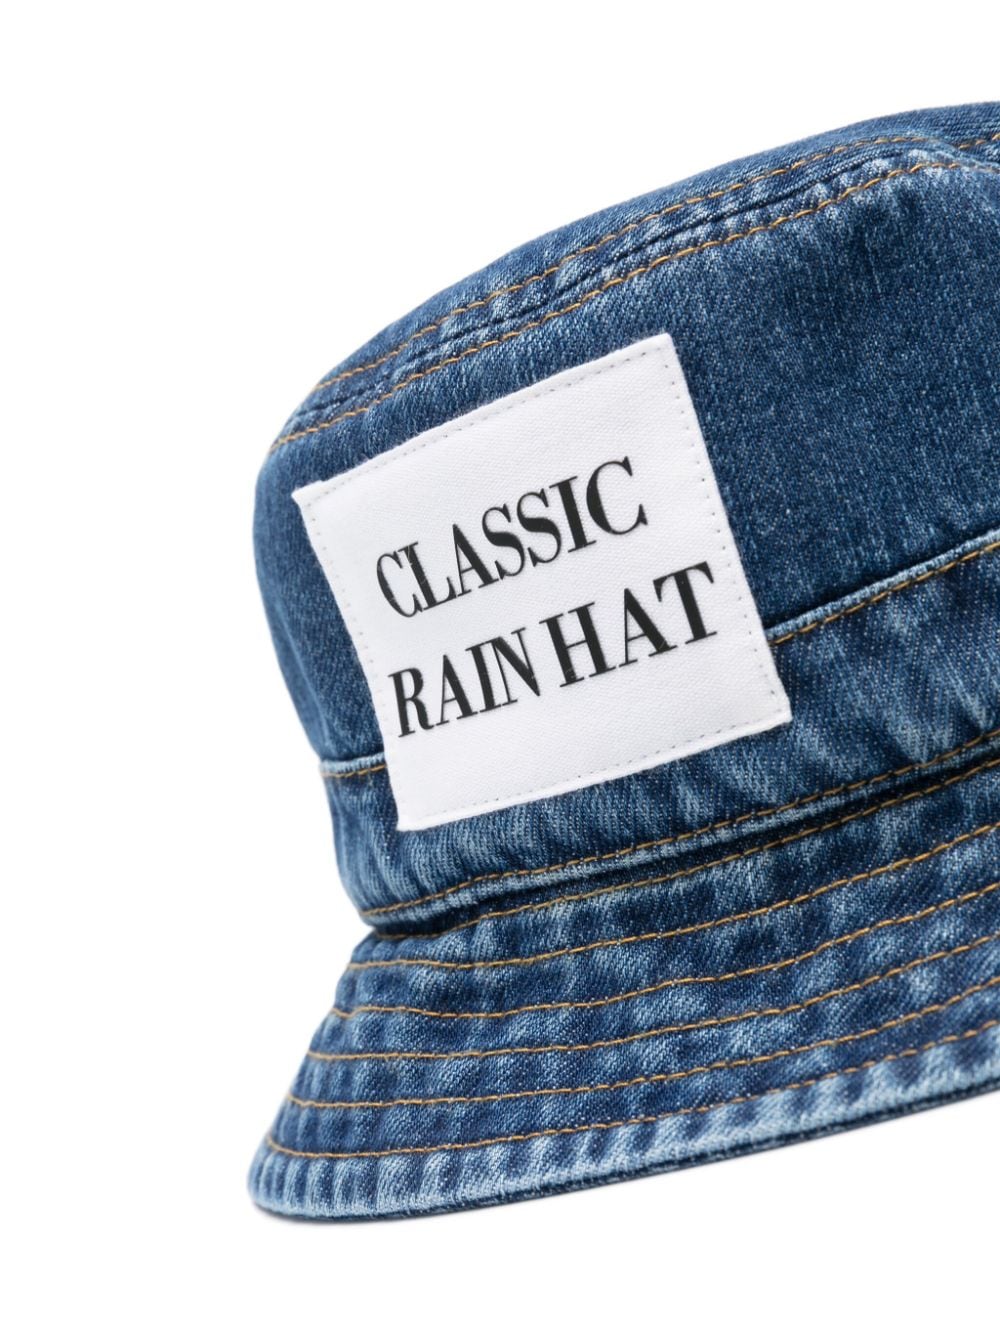 Moschino Classic Rain Hat vissershoed - Blauw